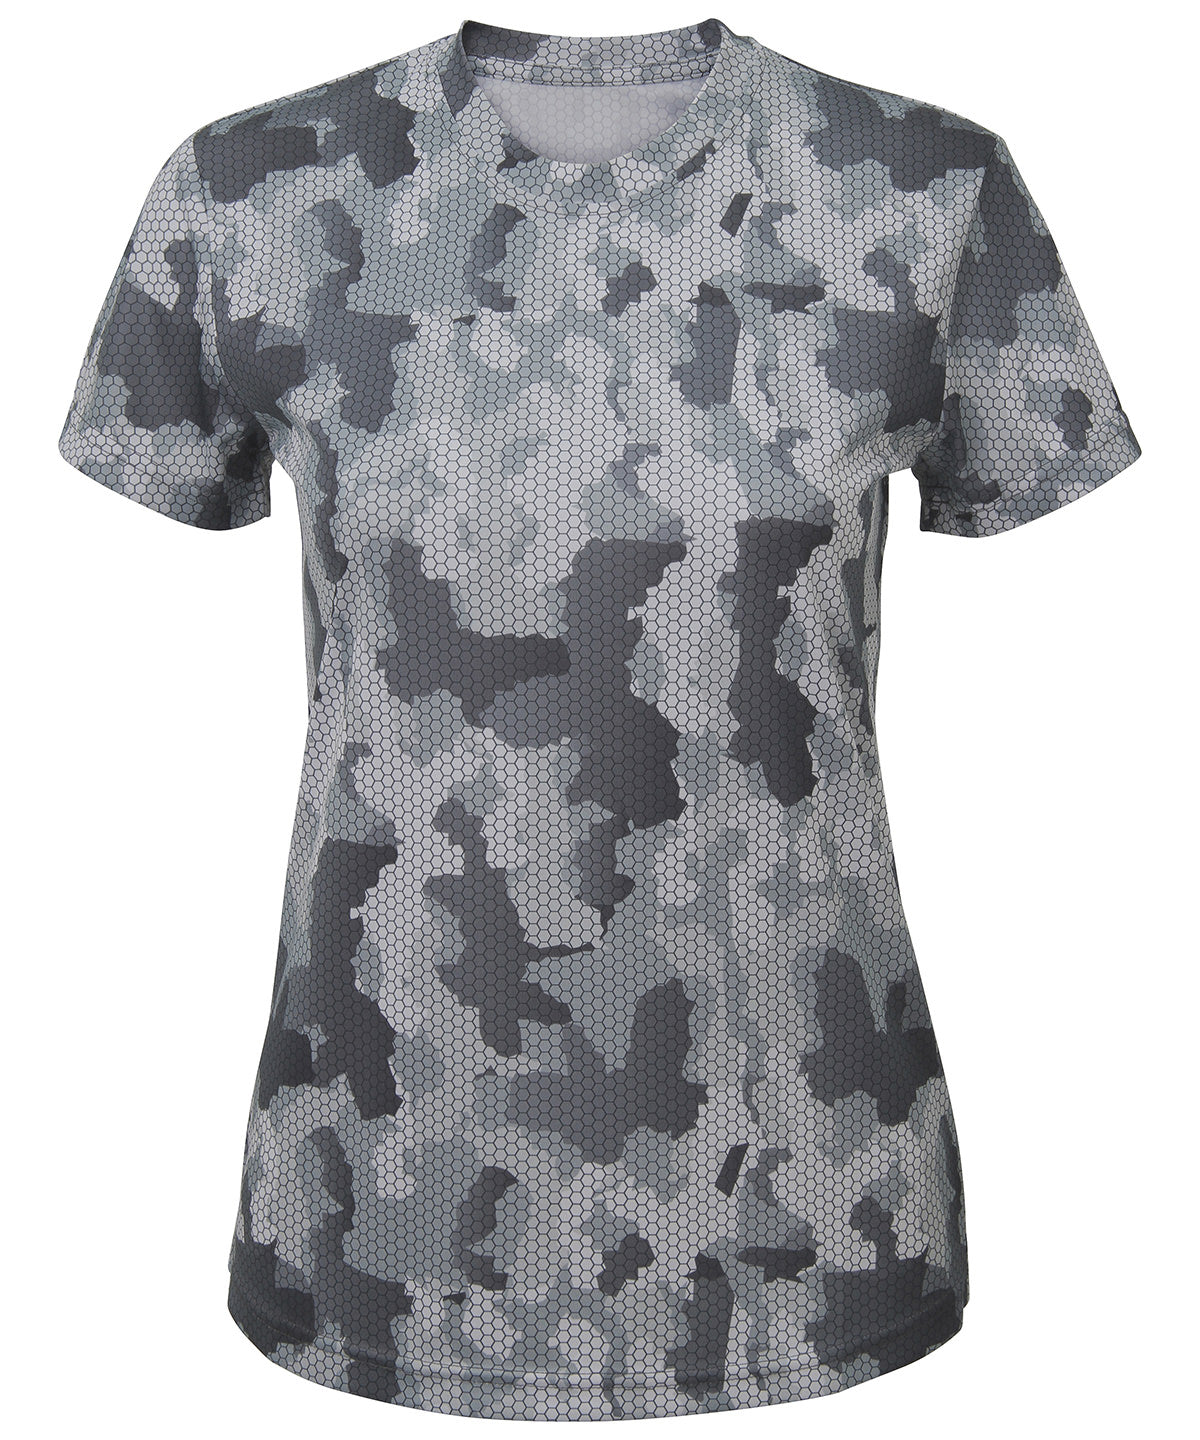 Women's TriDri® Hexoflage® Performance T-shirt